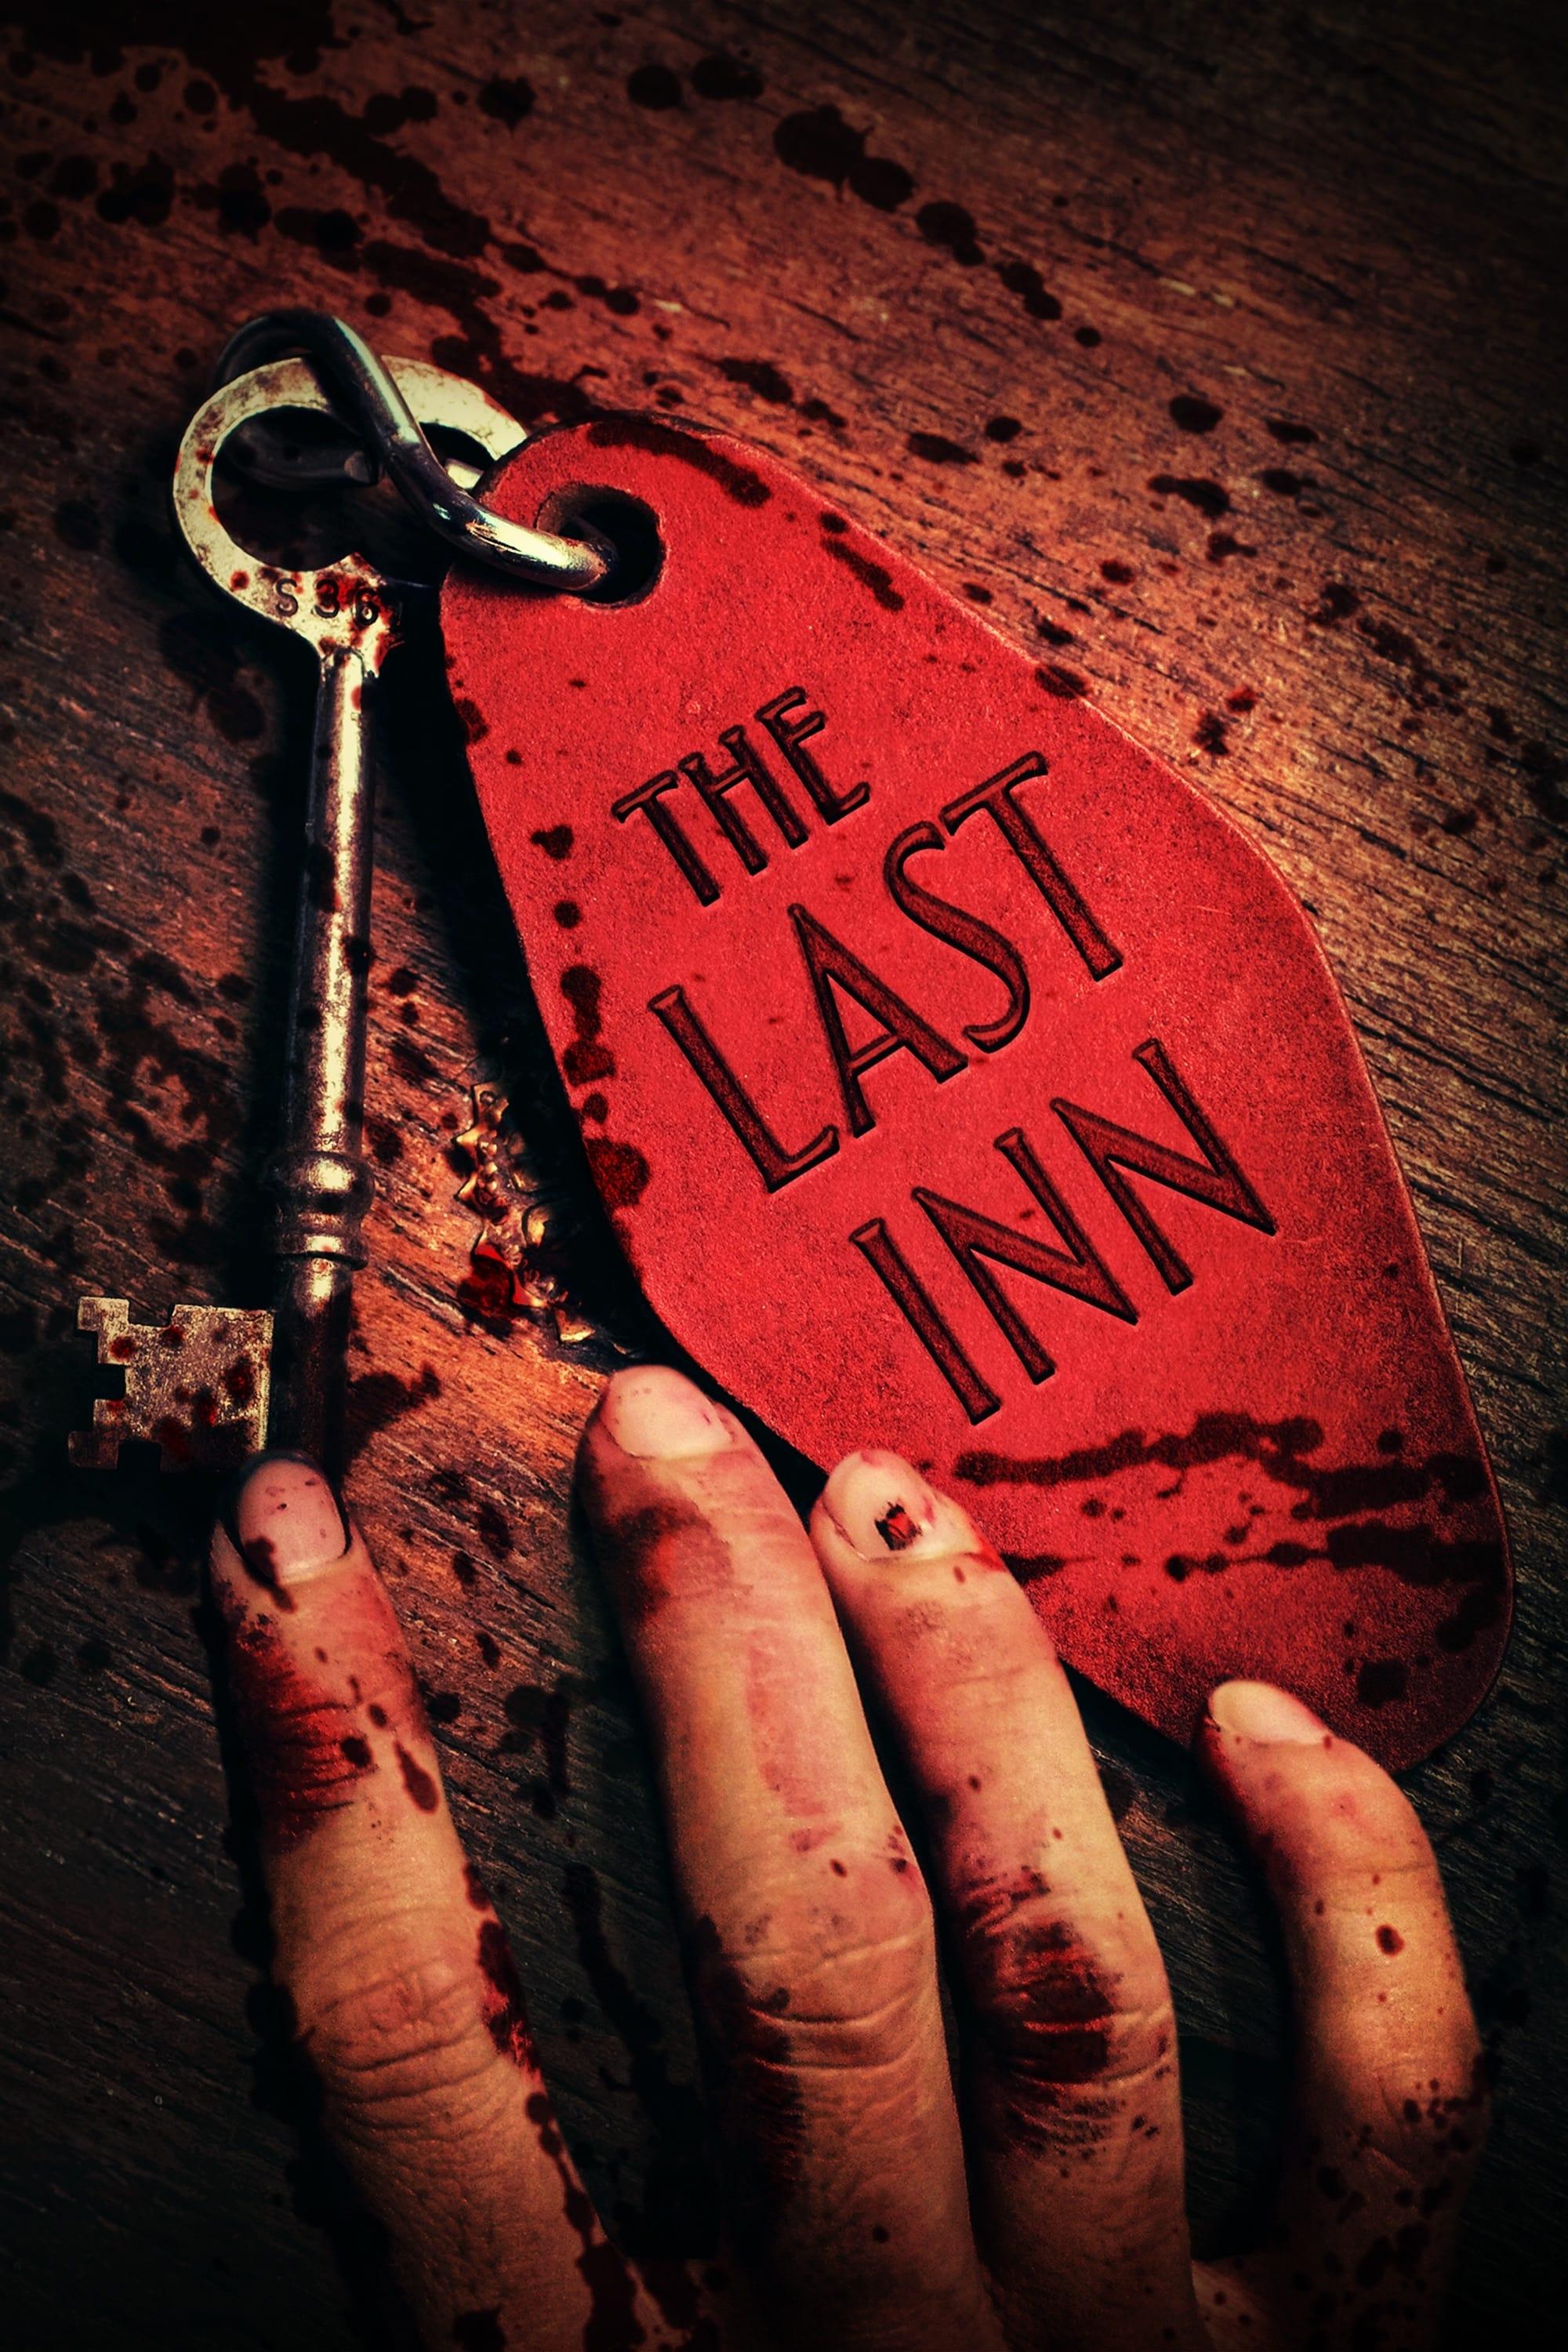 The Last Inn poster